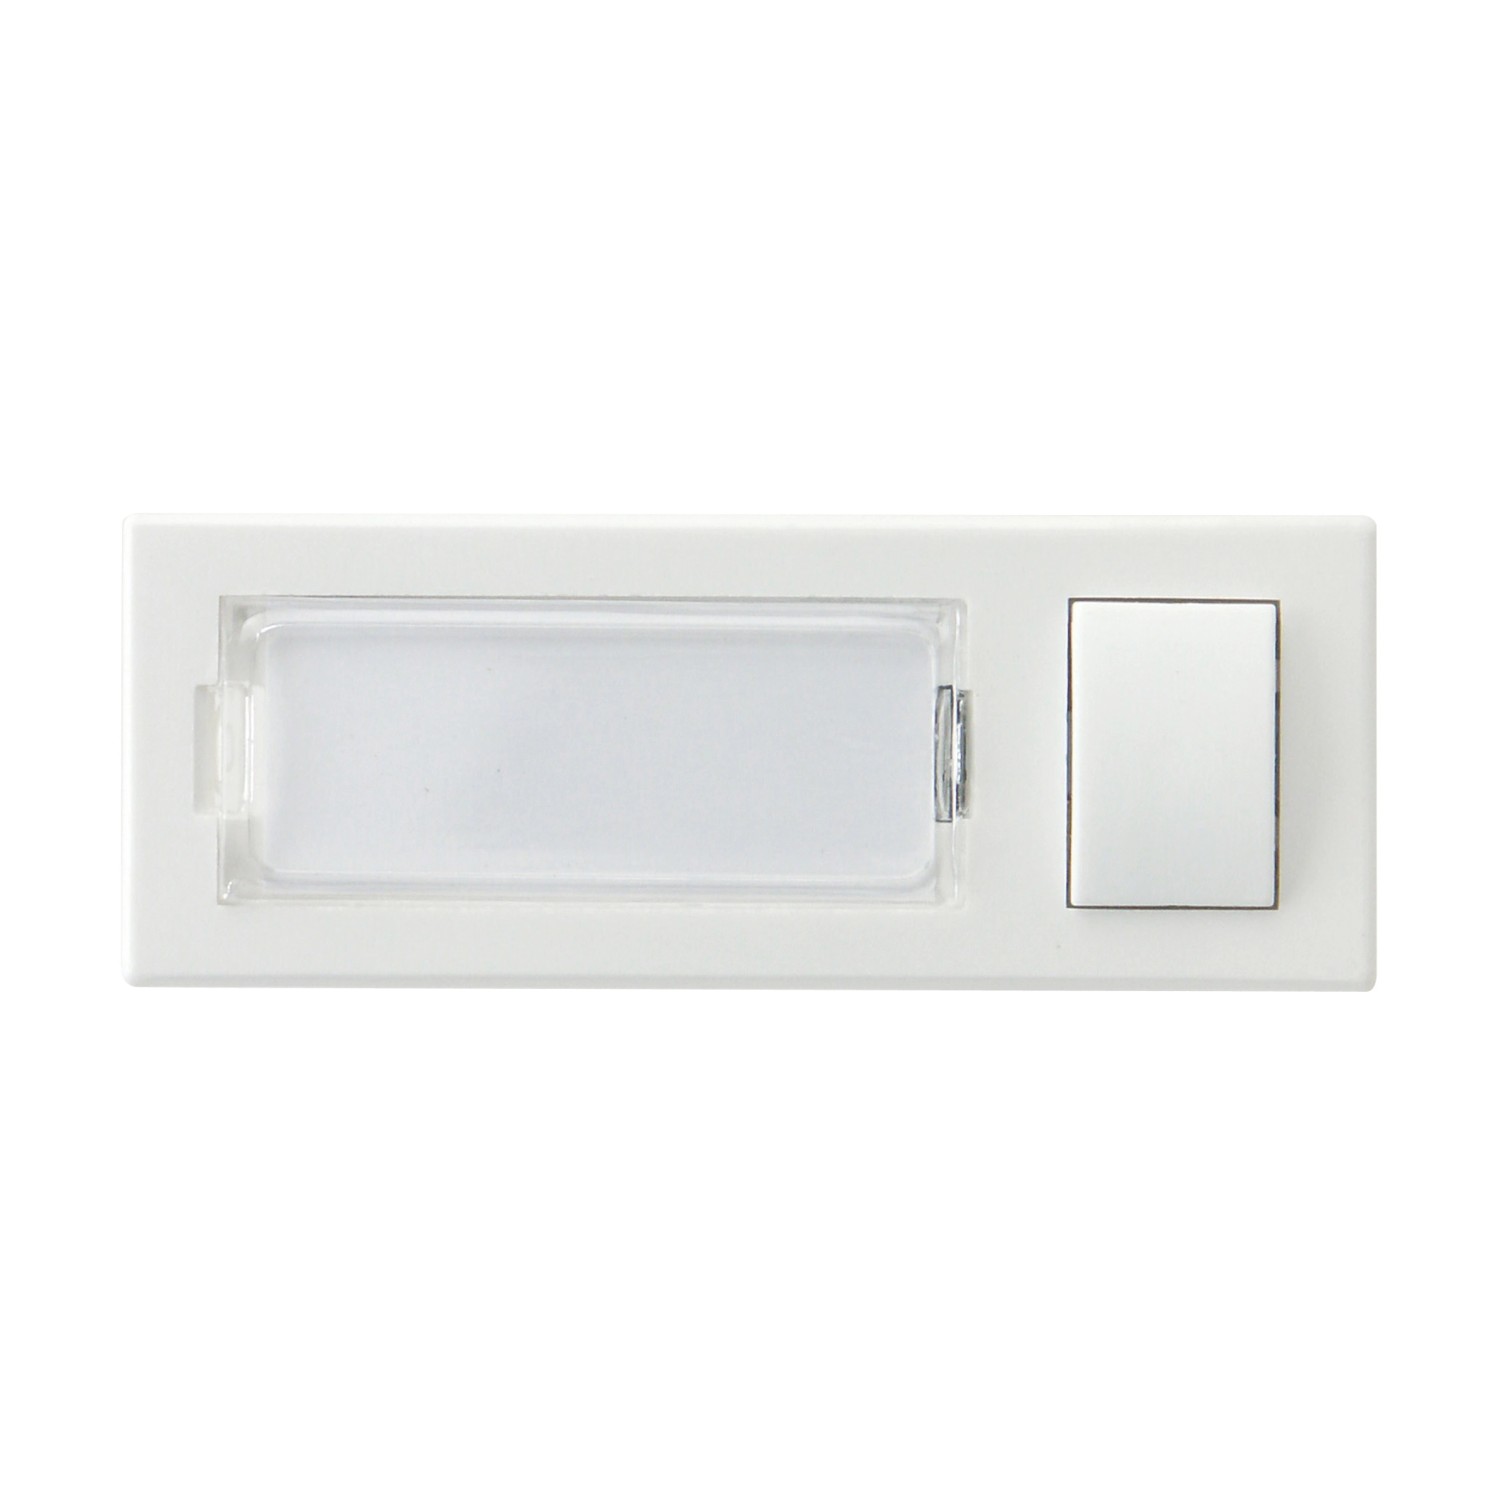 REV Klingeltaster rechteckig Weiß mit ext. Knopf H: 8,8 cm